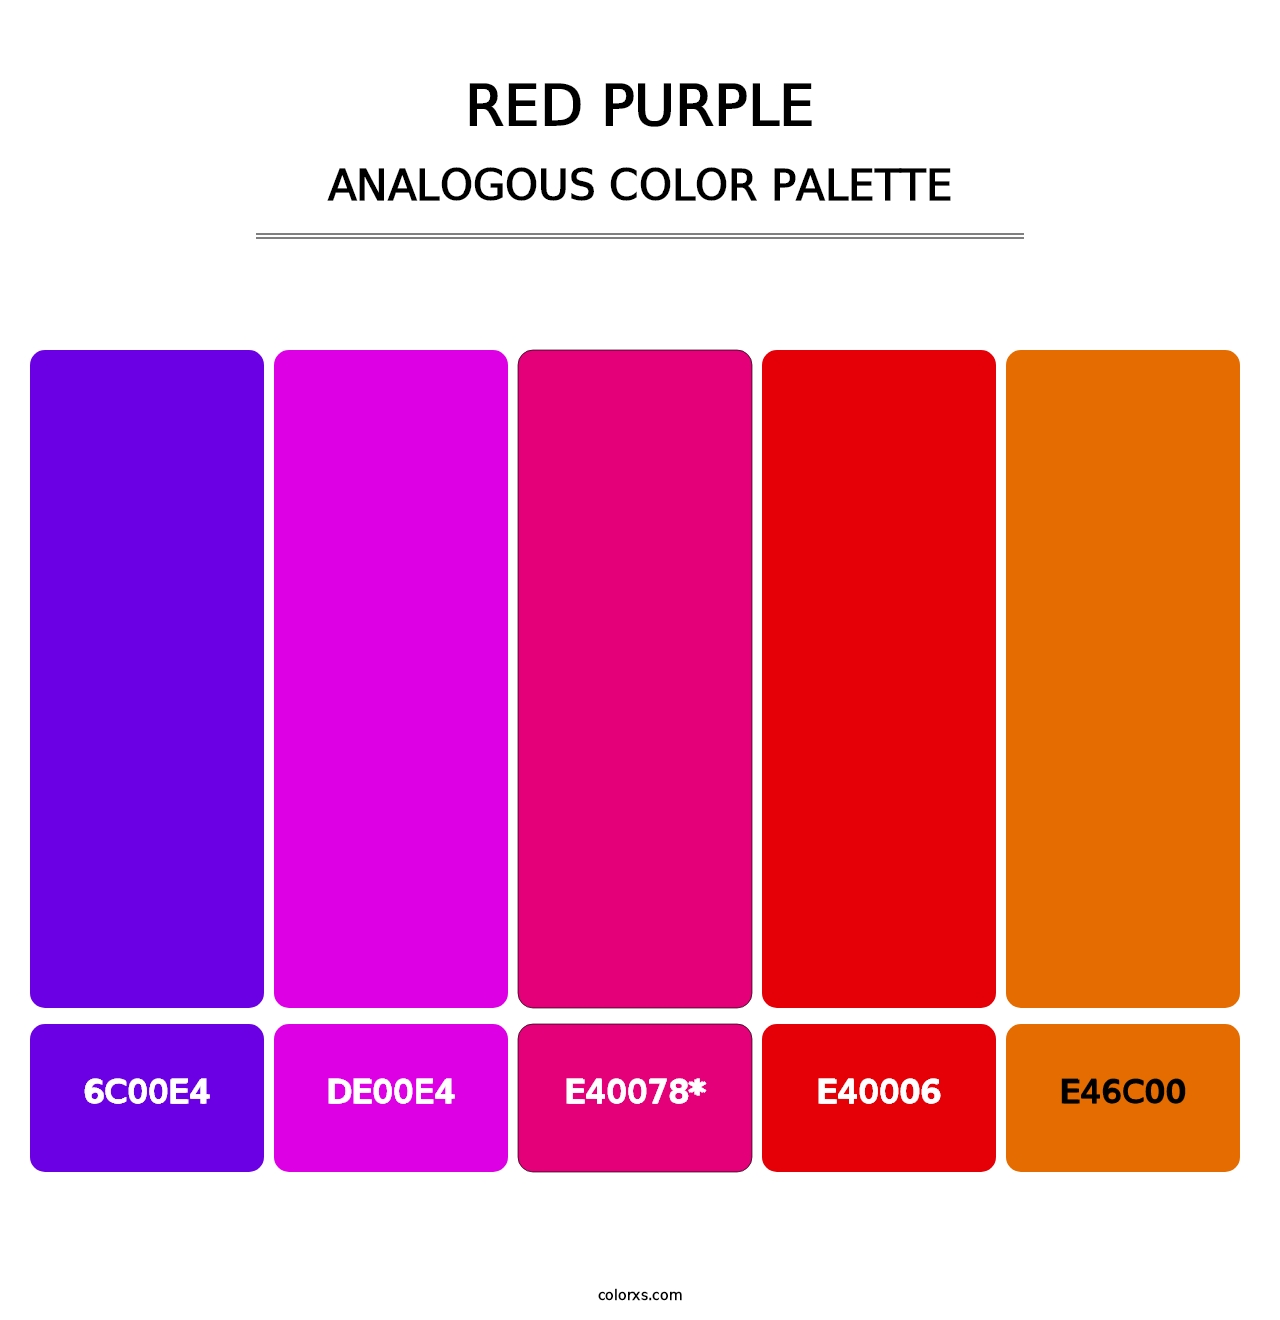 Red Purple - Analogous Color Palette